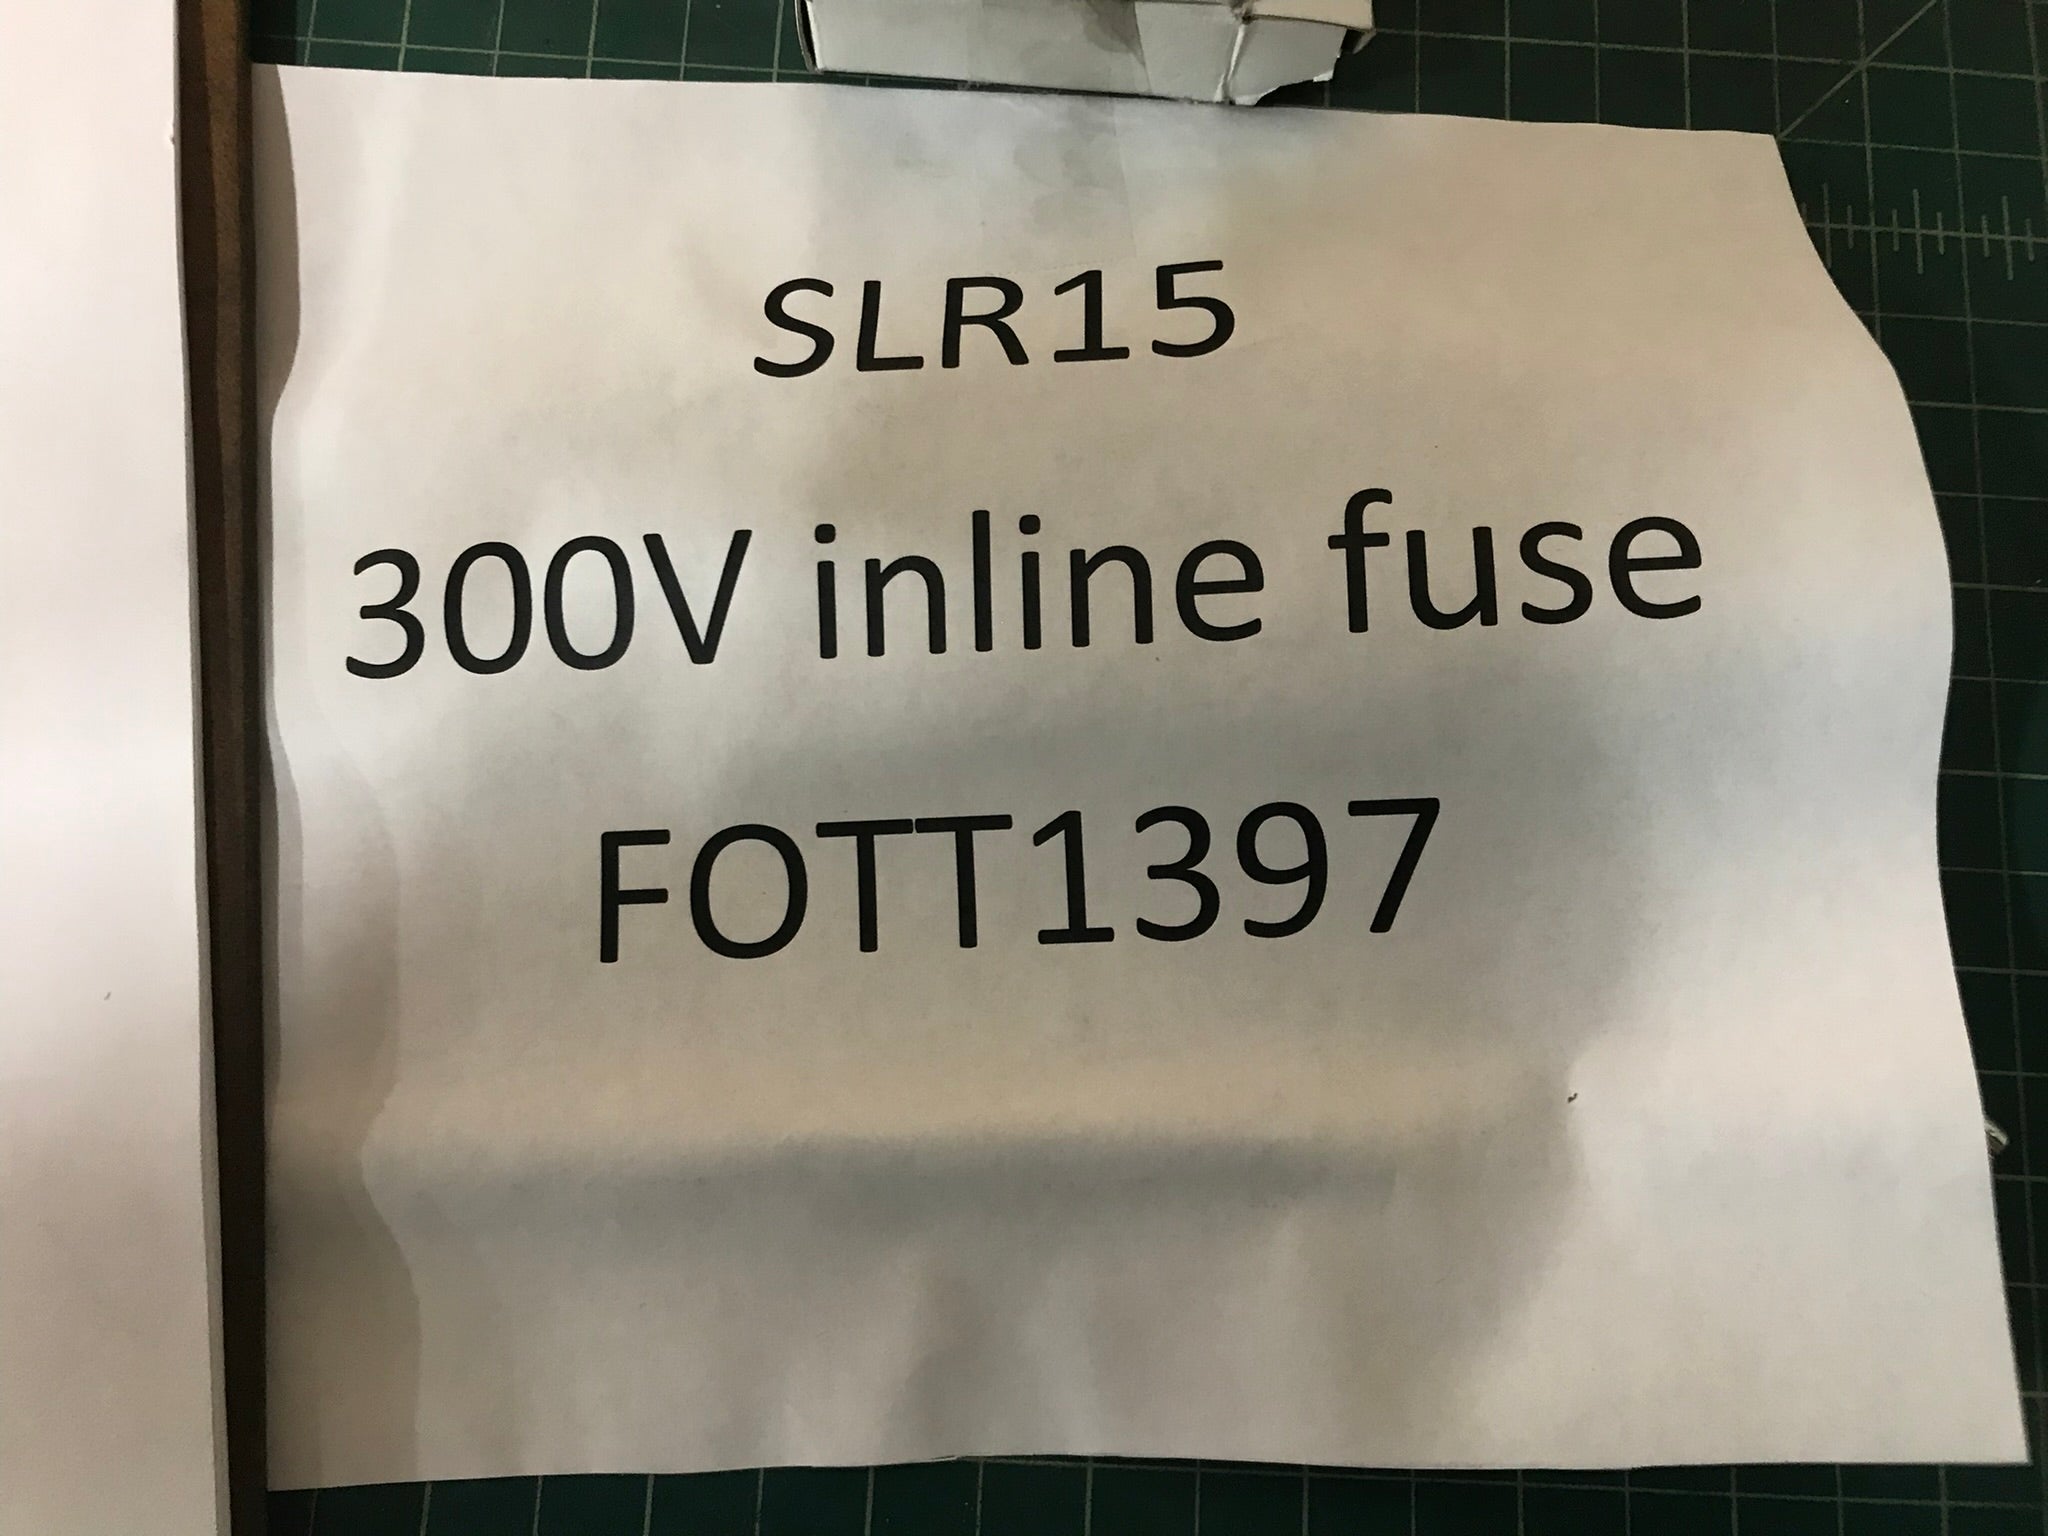 300V inline fuse